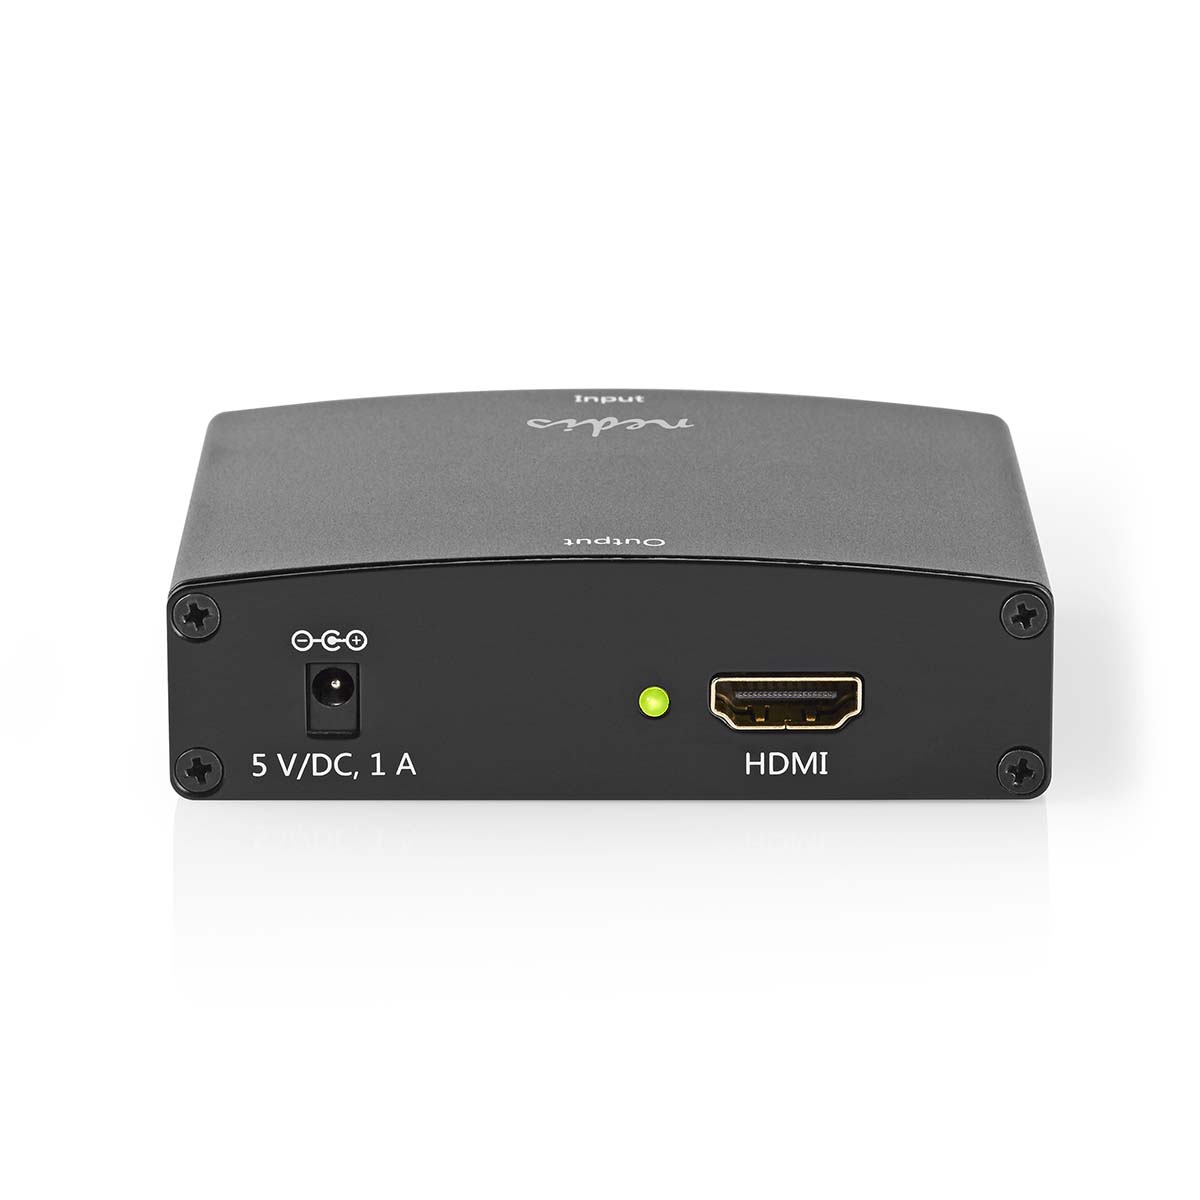 NEDIS VCON3454AT HDMI Converter